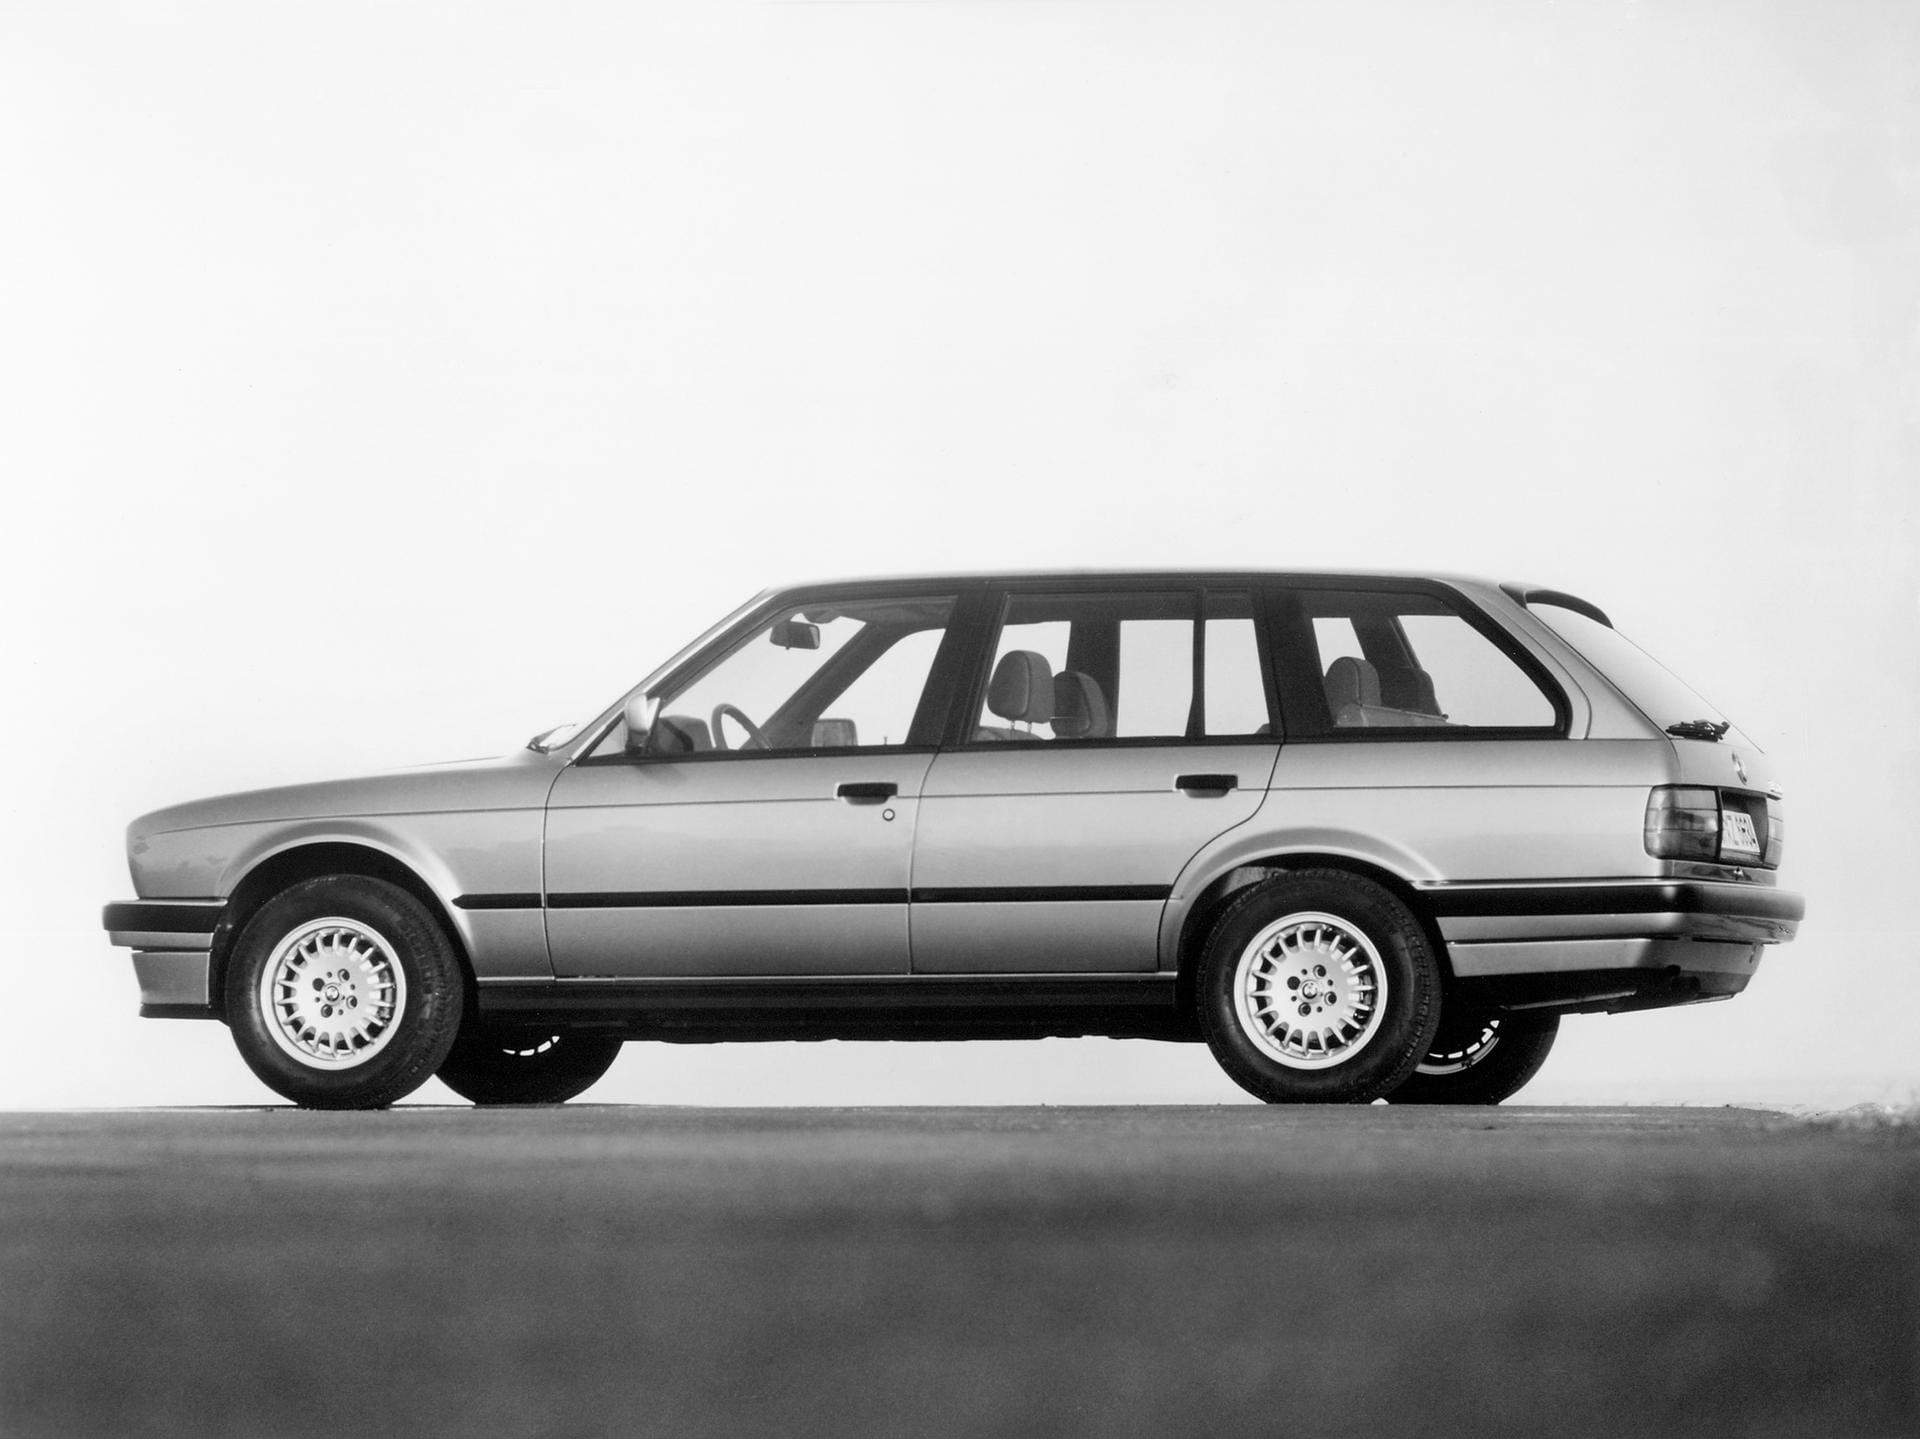 BMW 3er (E30) Touring: In seiner zweiten Generation wird der BMW 3er auch praktisch, die Münchner bieten mit der Variante Touring einen Kombi an.